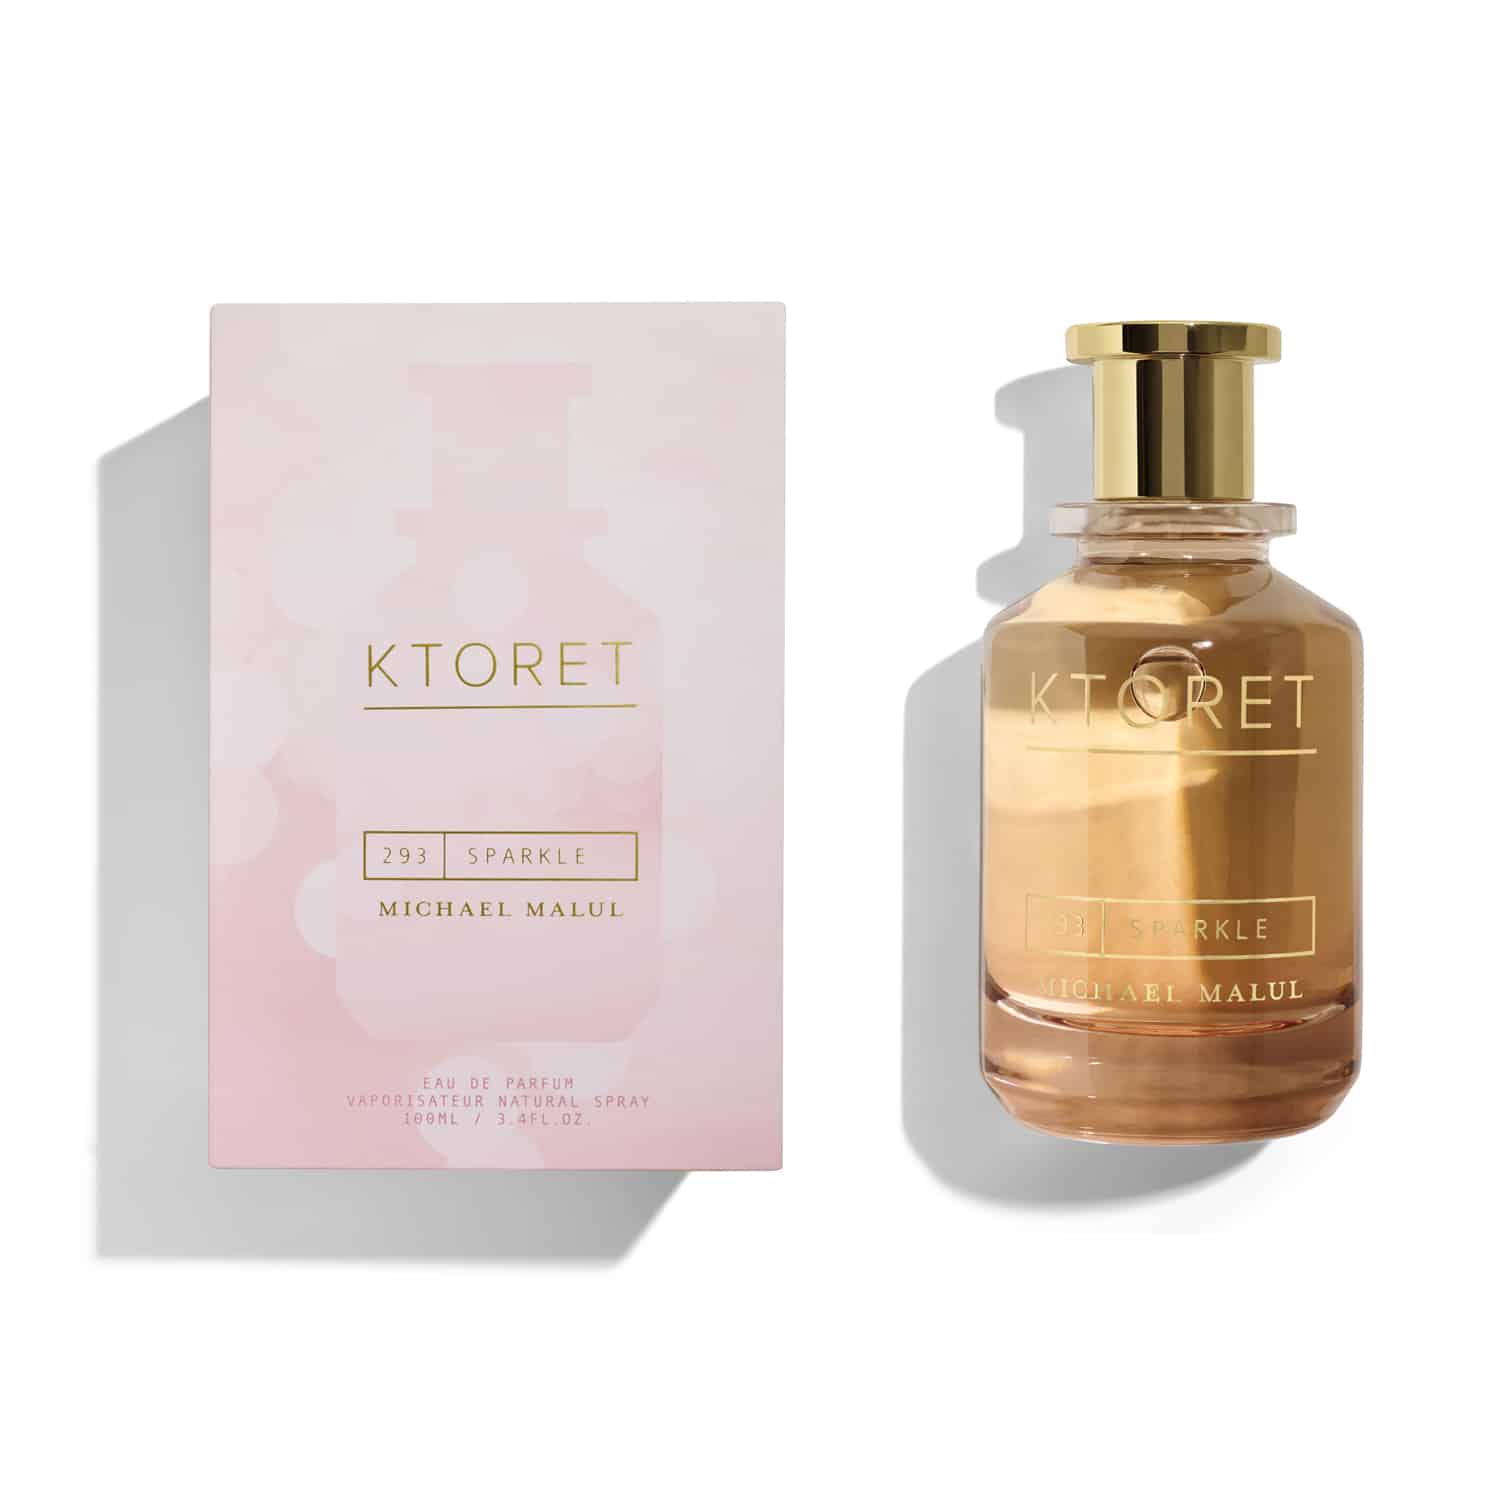 Ktoret Sparkle Eau de Parfum Spray for Women by Michael Malul, Product image 1